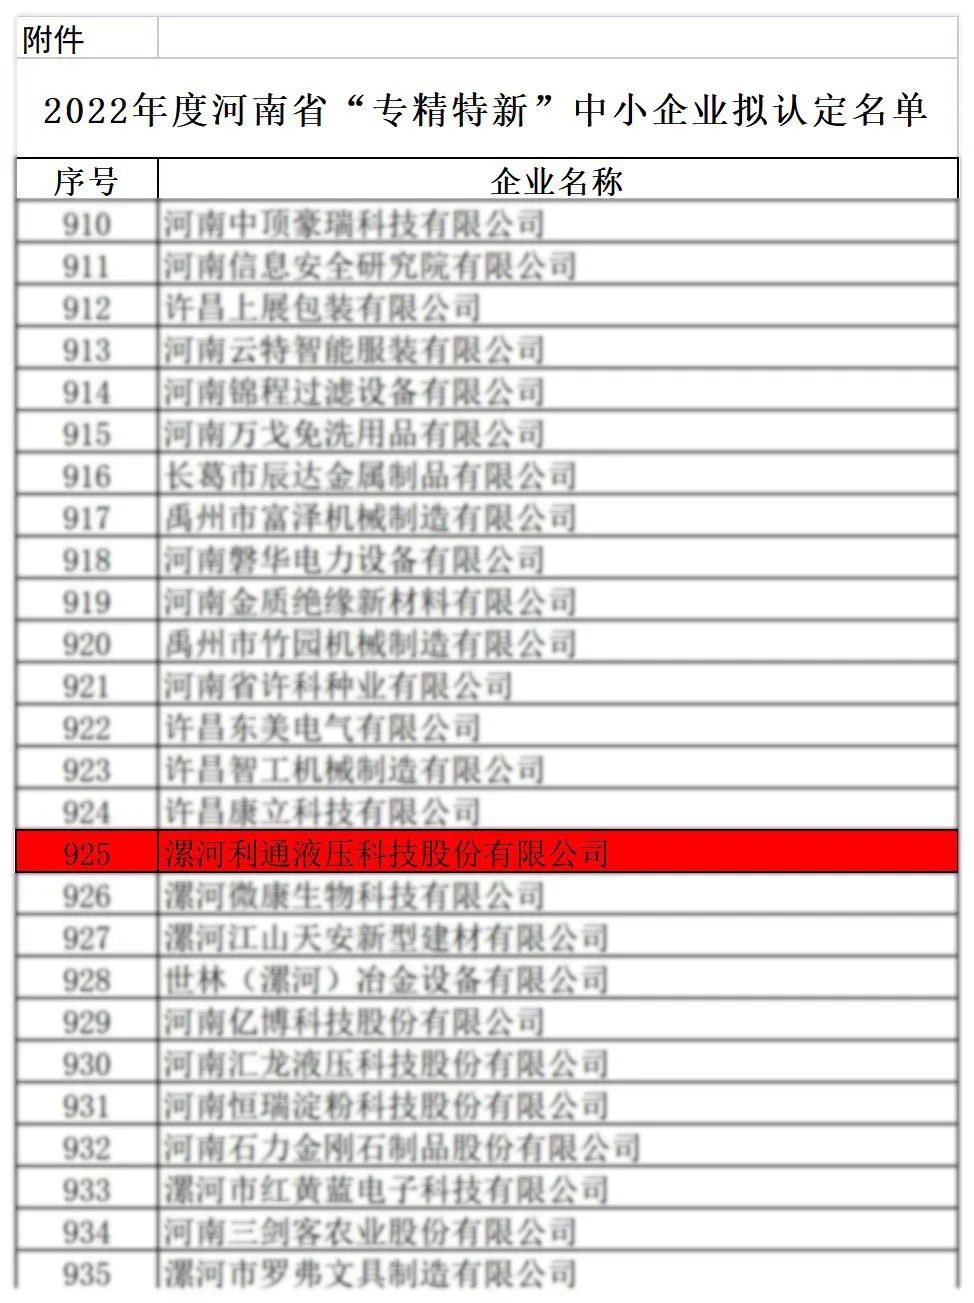 2022年度河南省“专精特新” 中小企业拟认定名单公示 利通科技上榜！